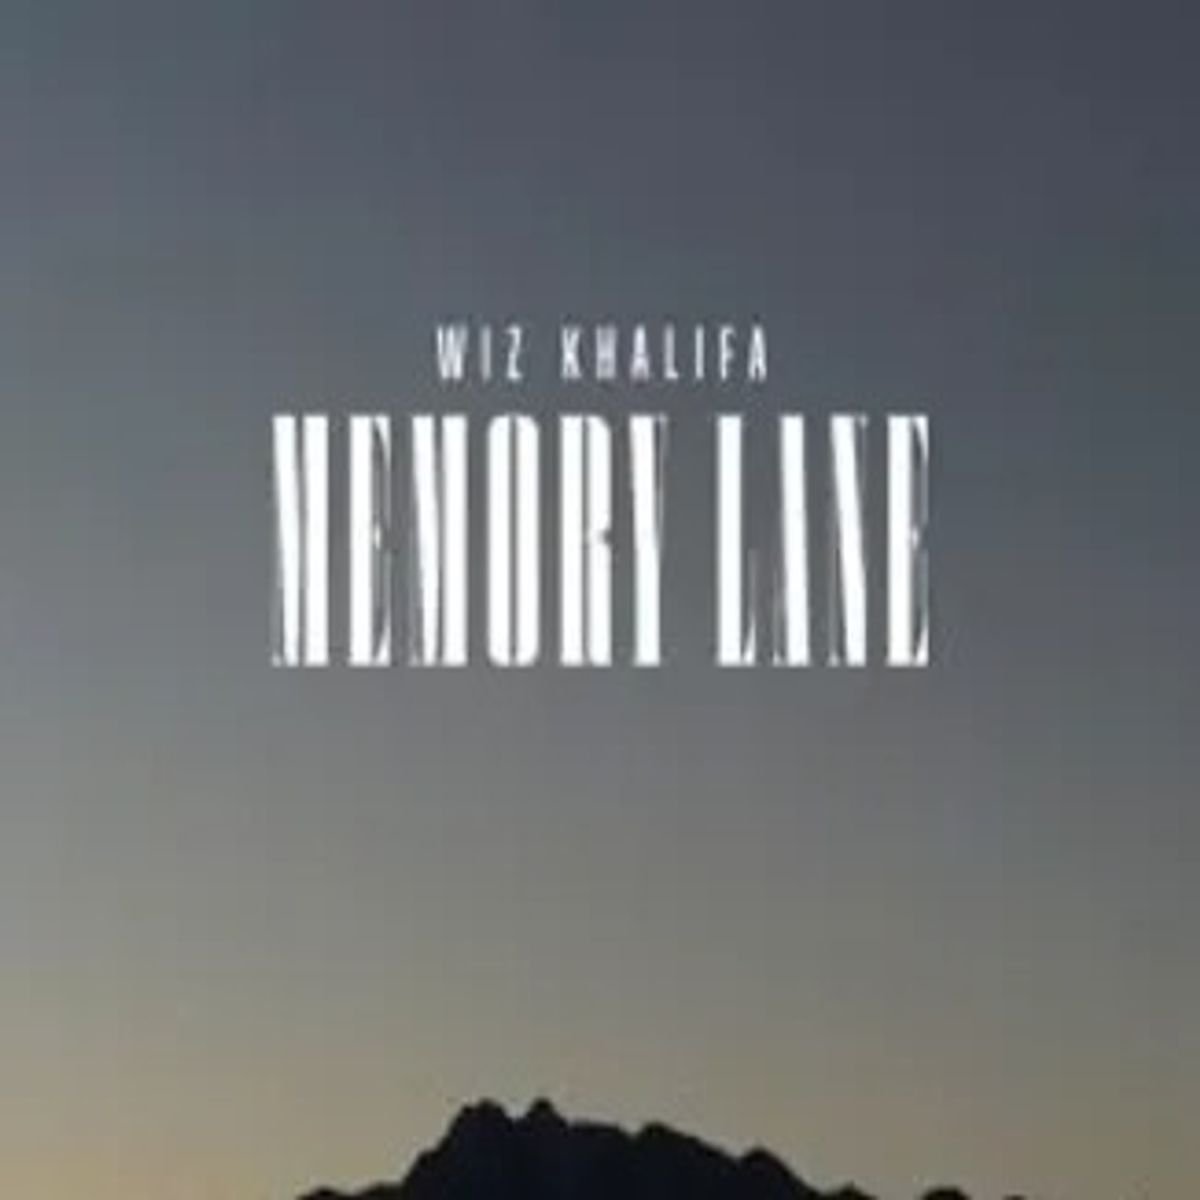 Wiz Khalifa – Memory Lane (Live)